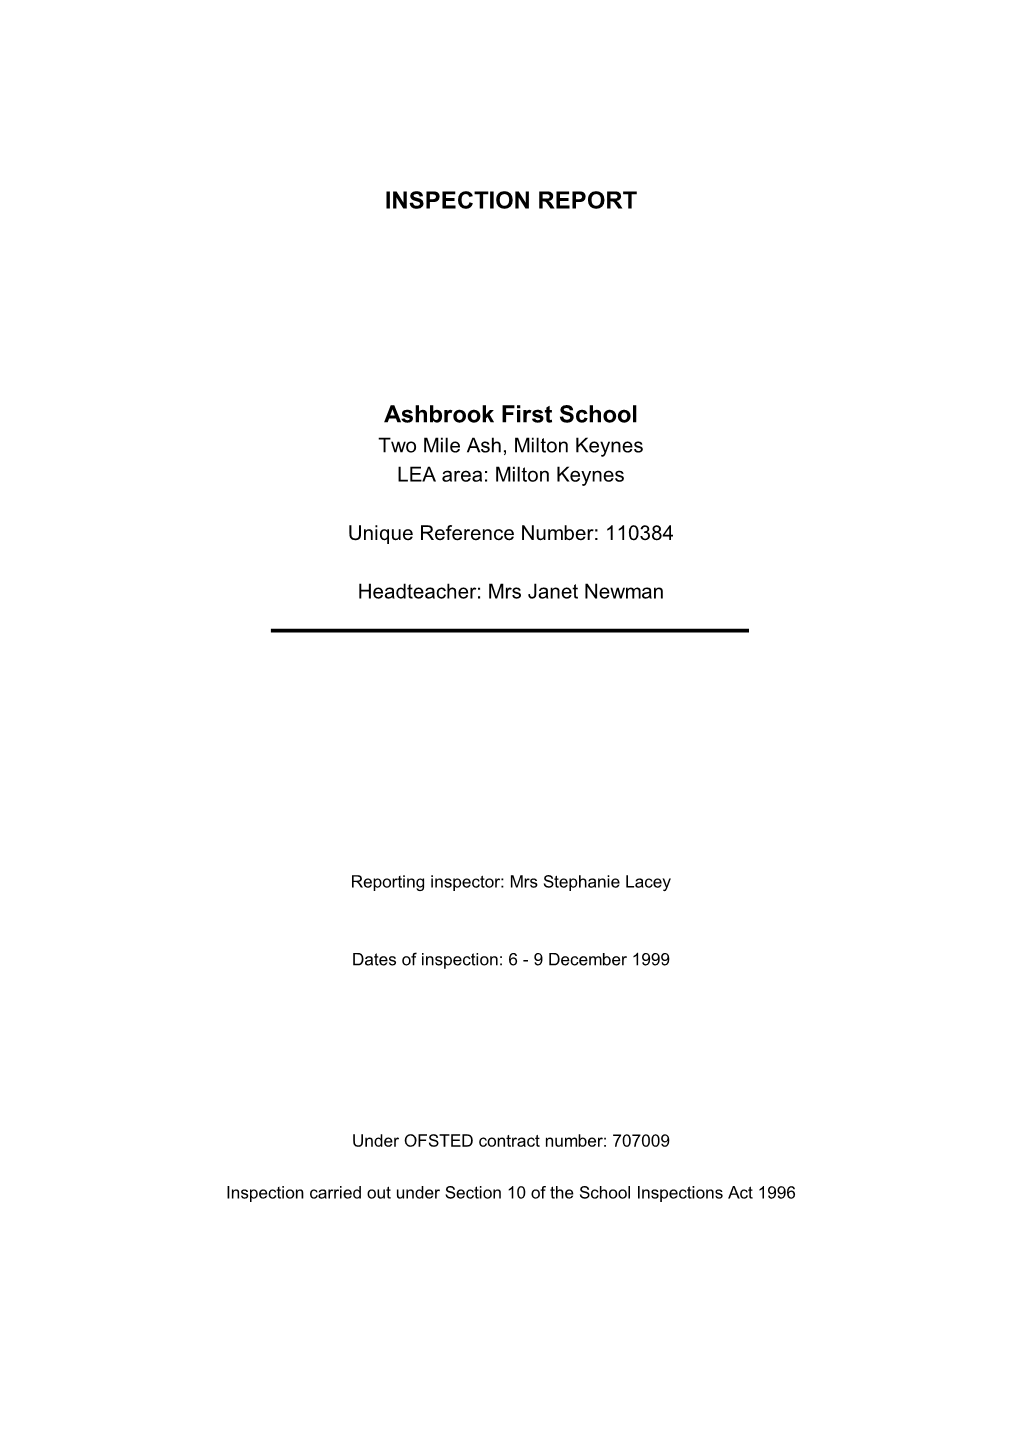 INSPECTION REPORT Ashbrook First School